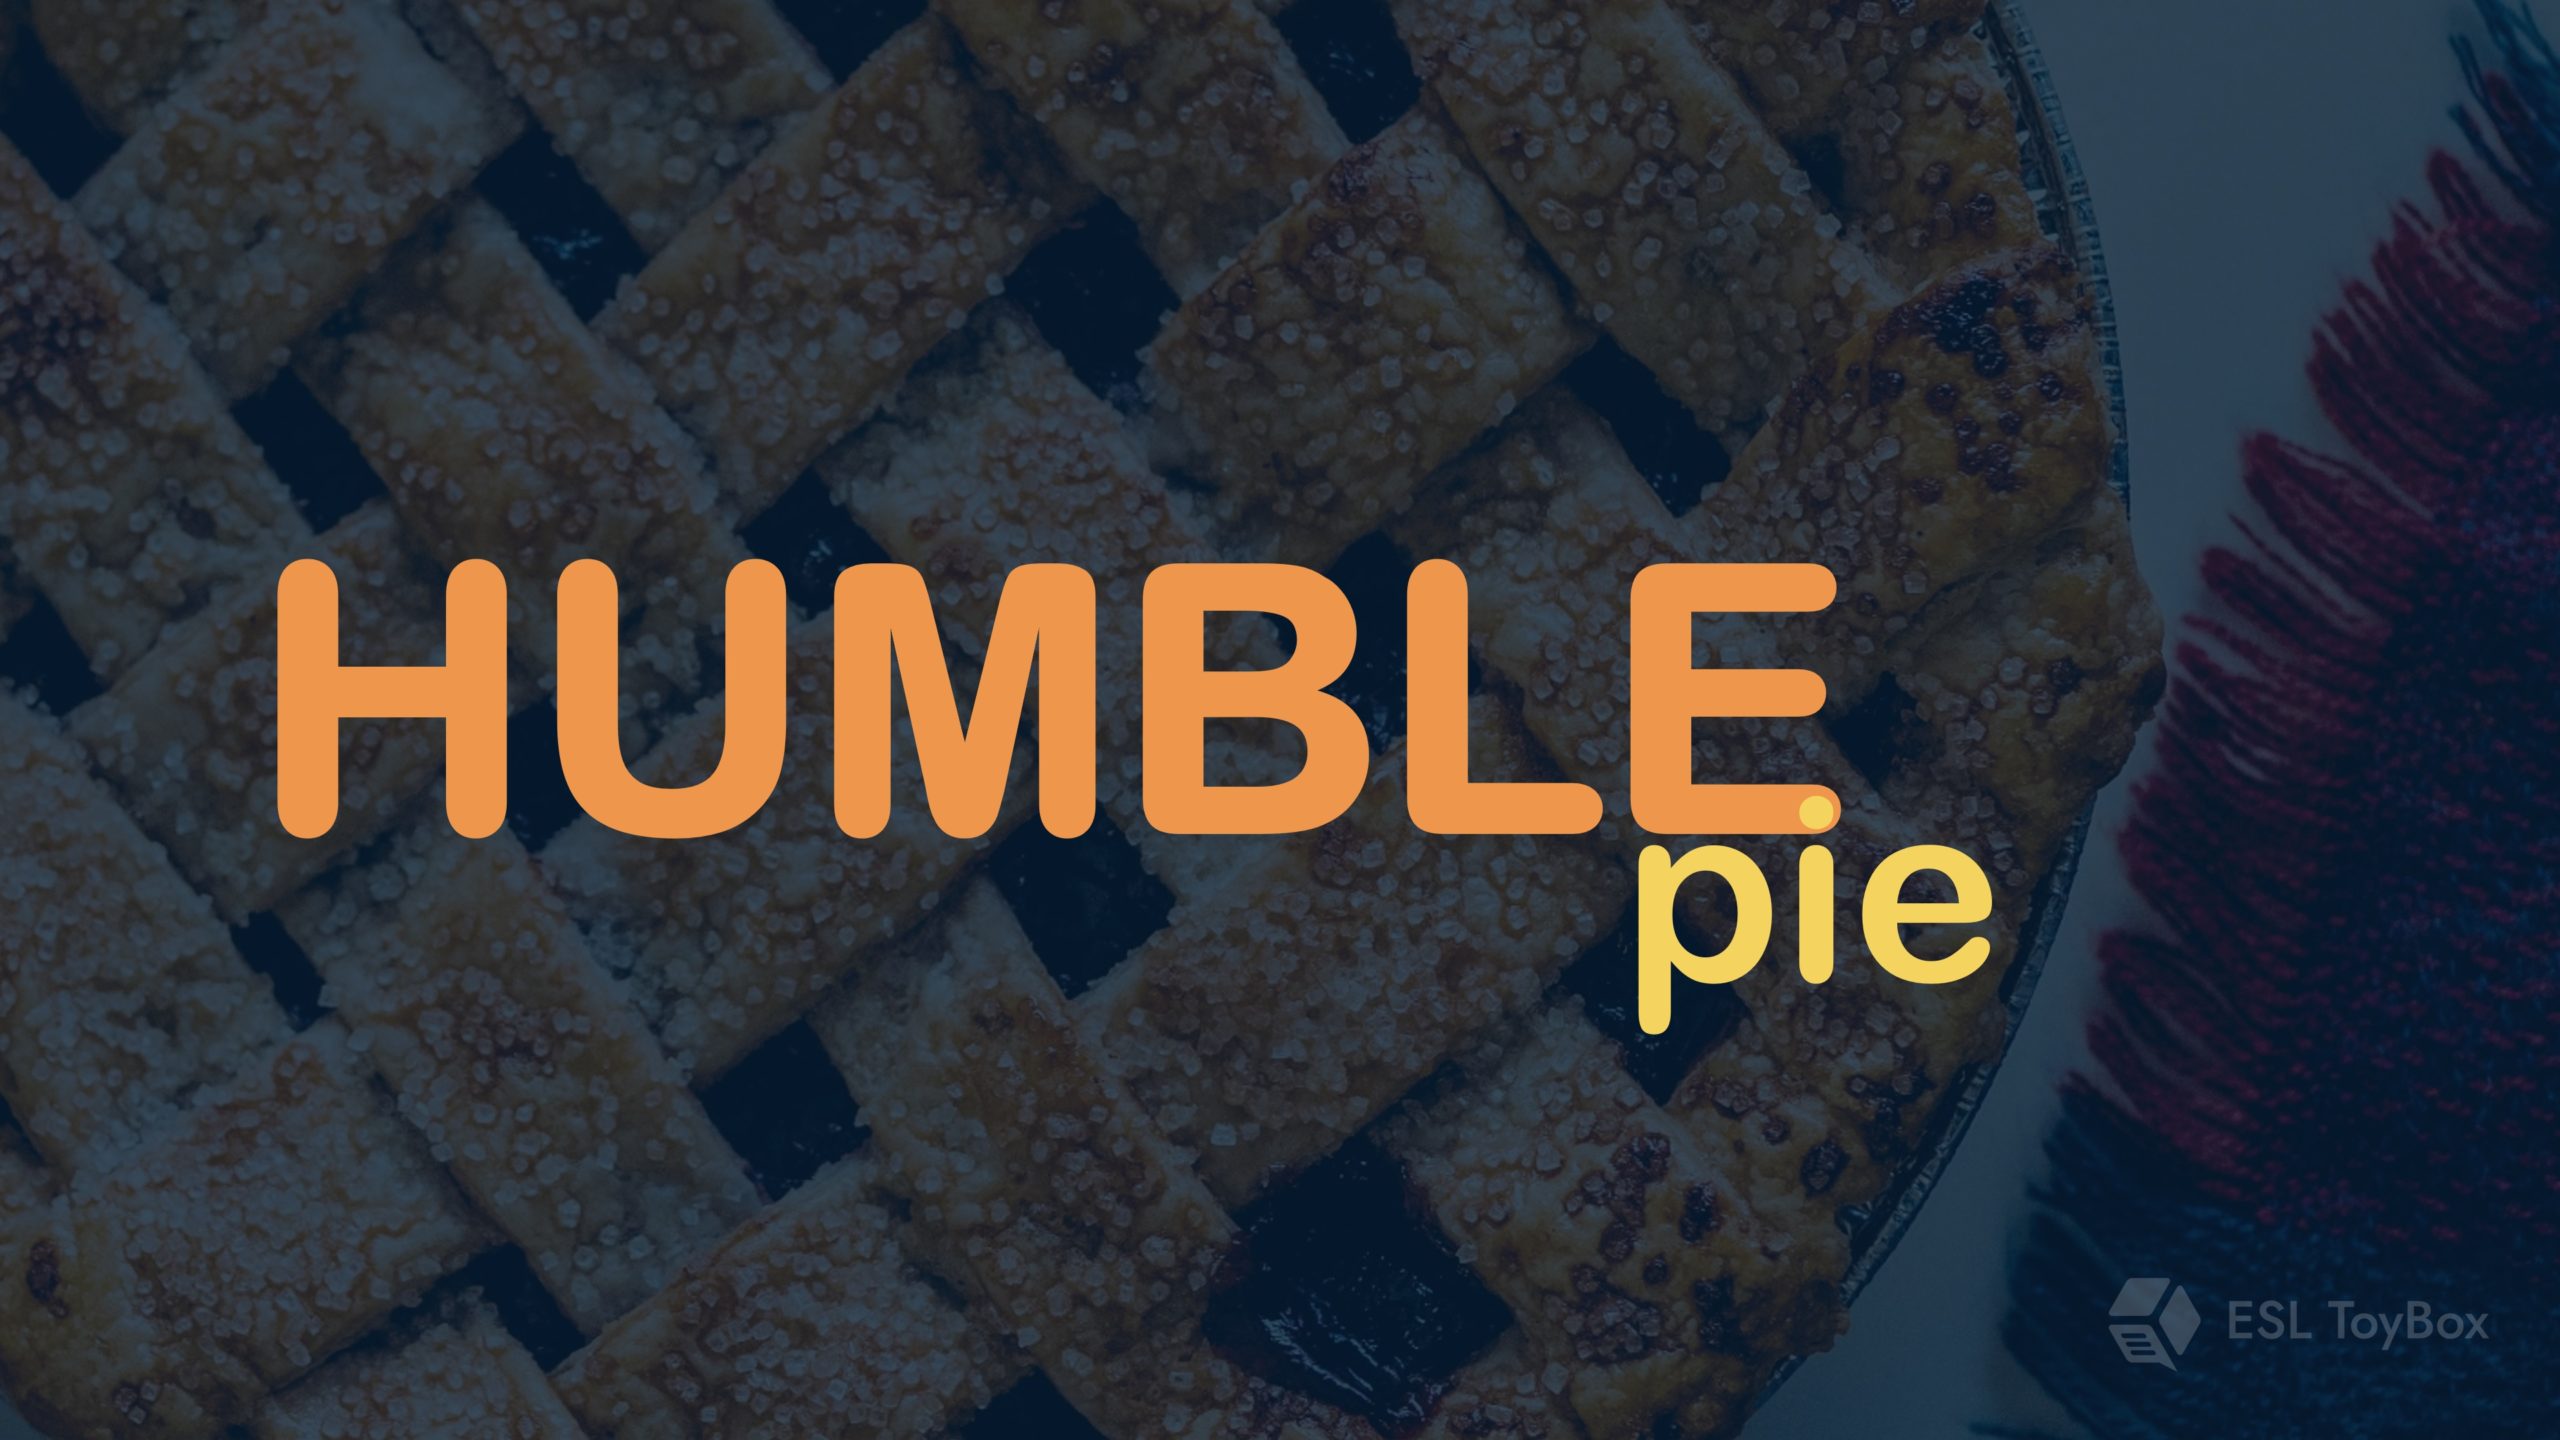 Humble Pie